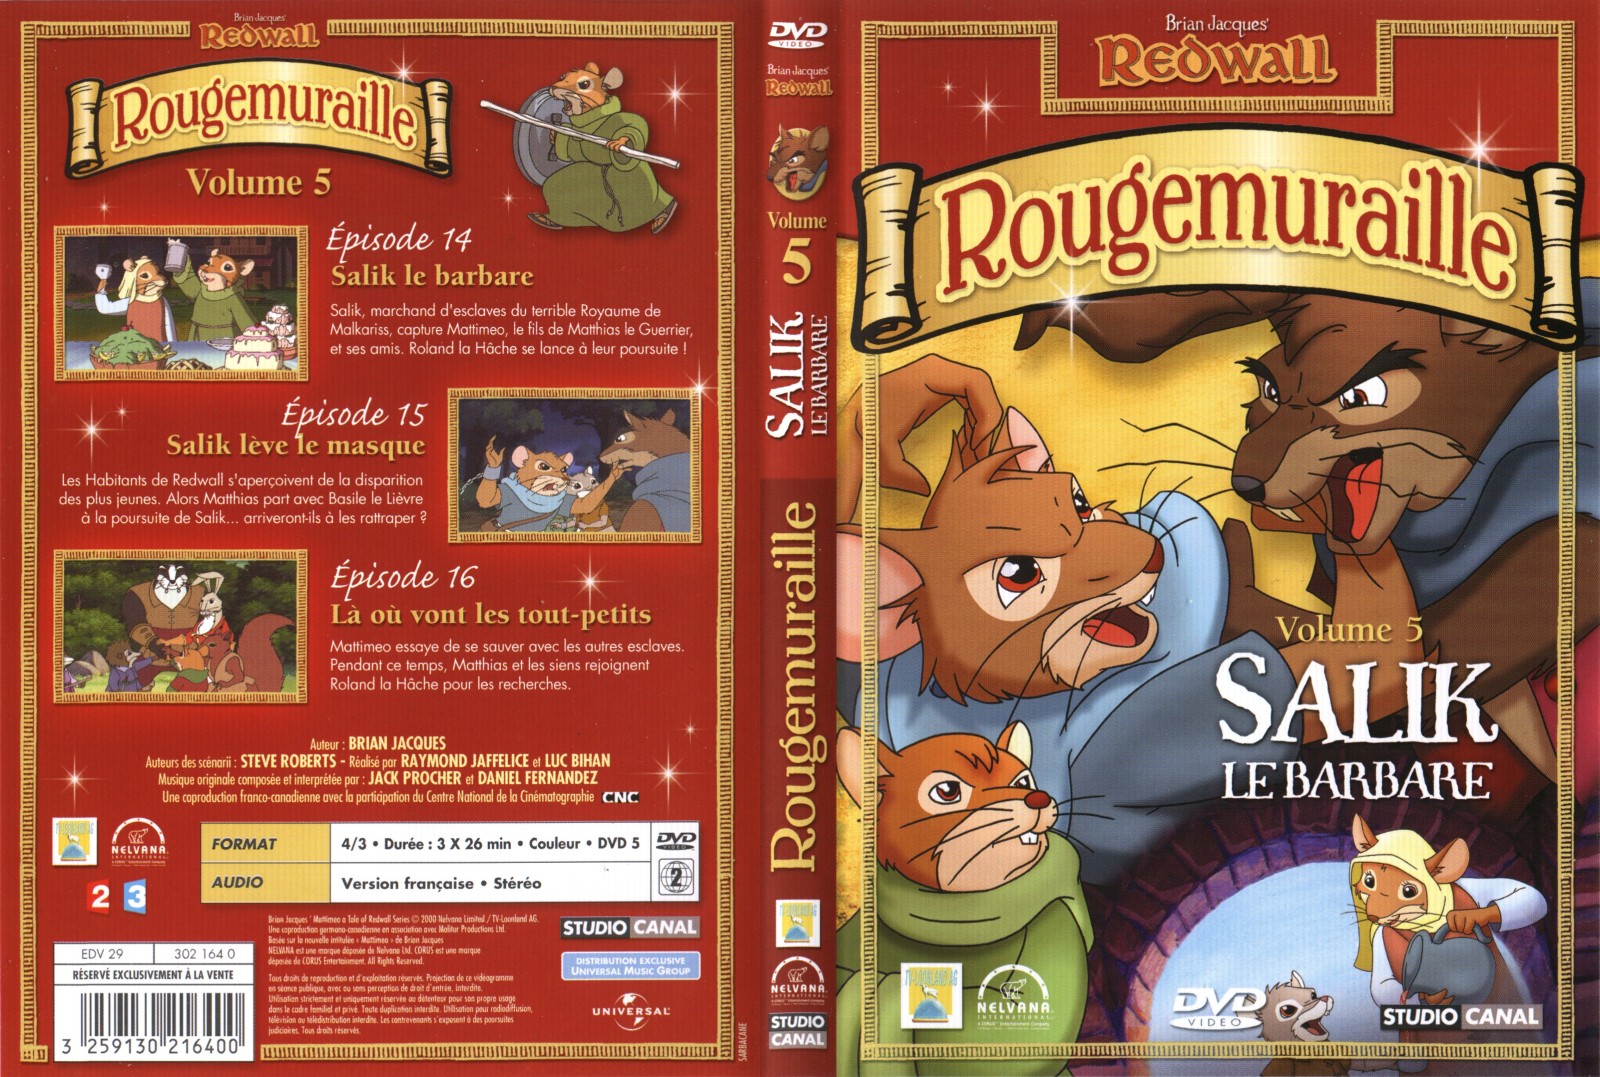 Jaquette DVD Rougemuraille vol 5